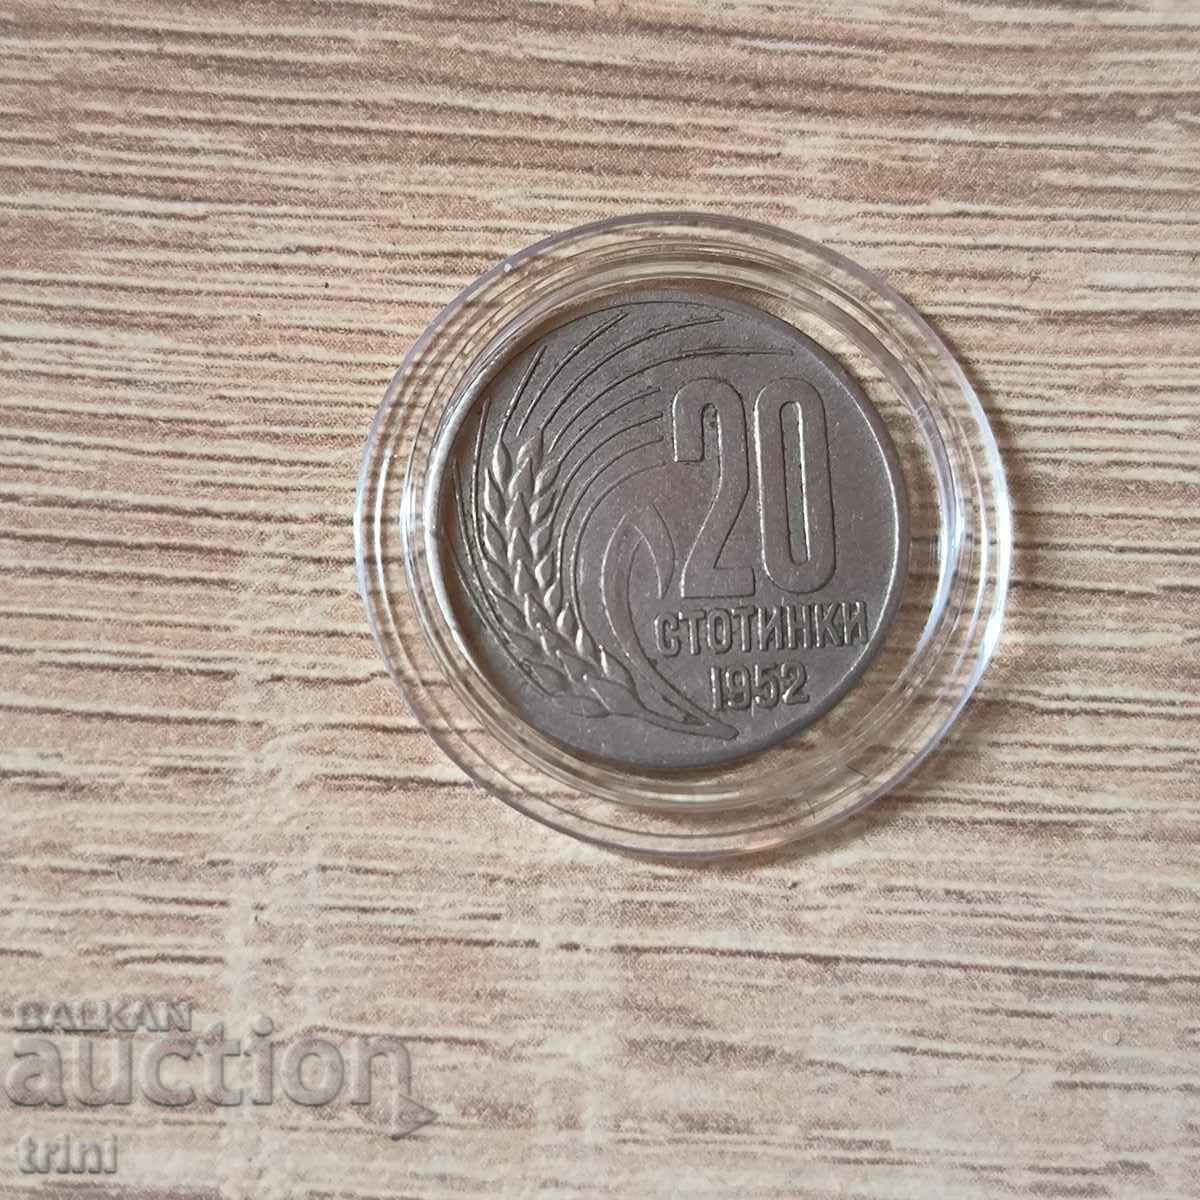 20 σεντς 1952